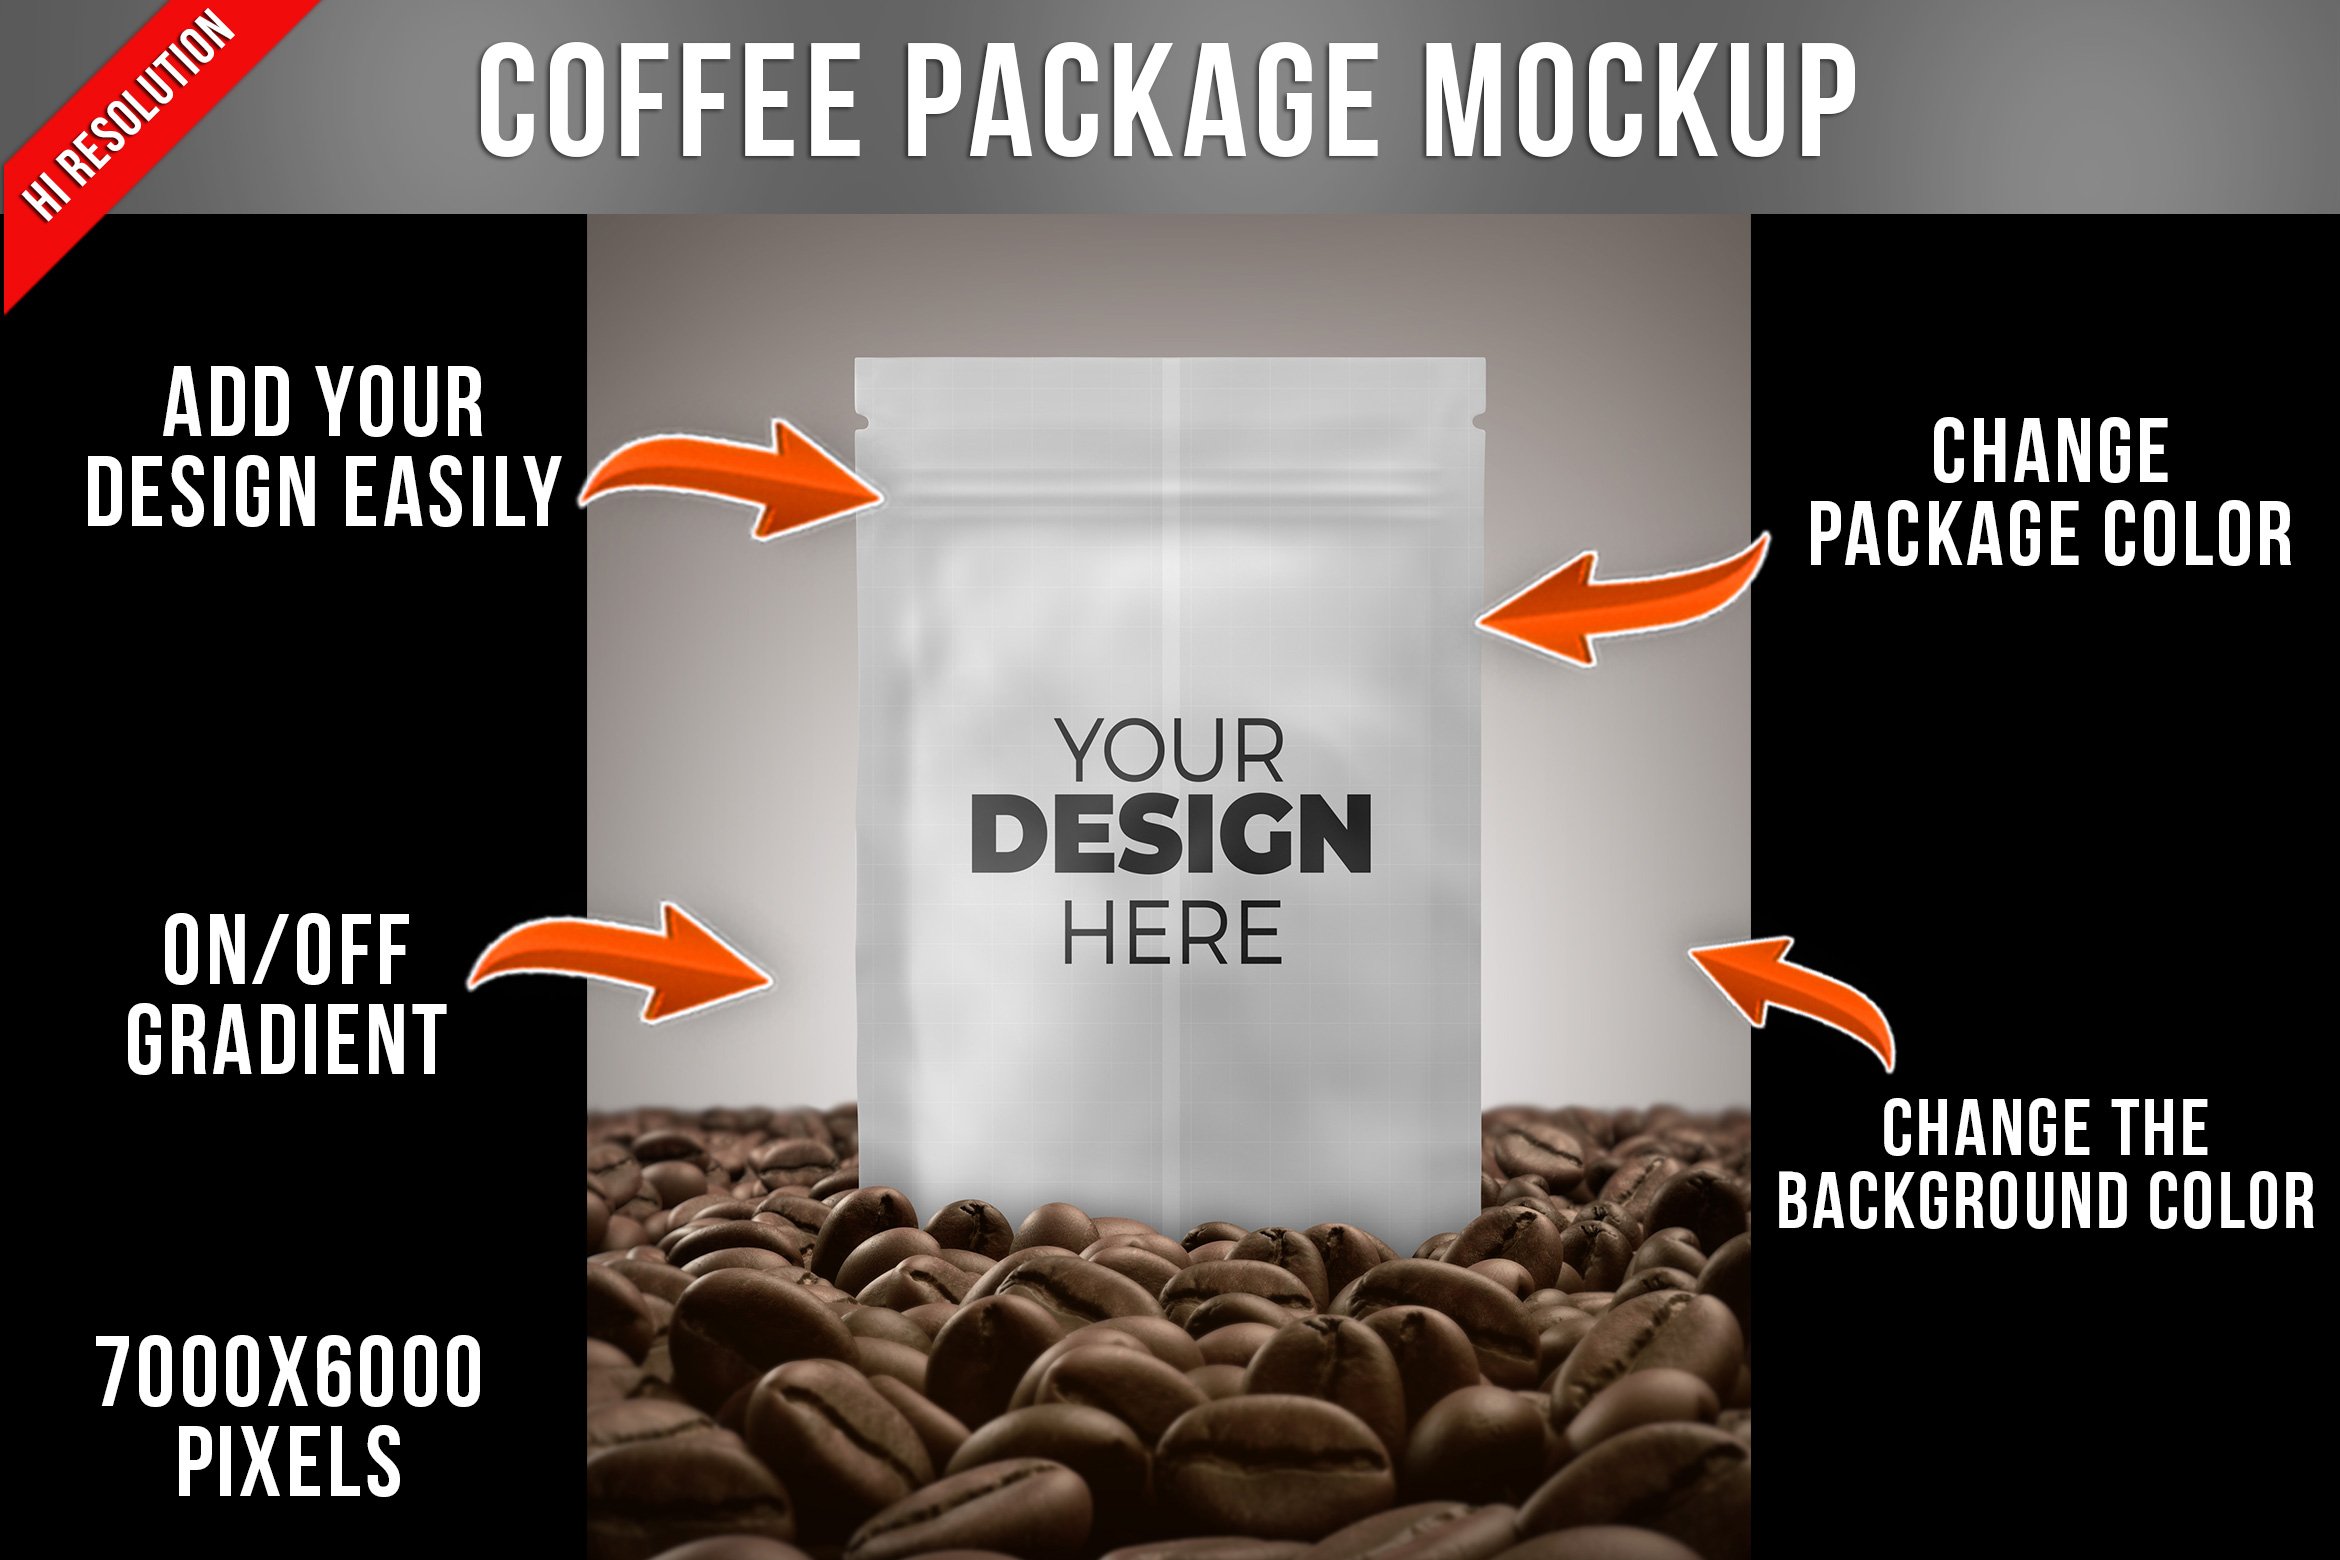 Coffee Bag Mockup cover image.